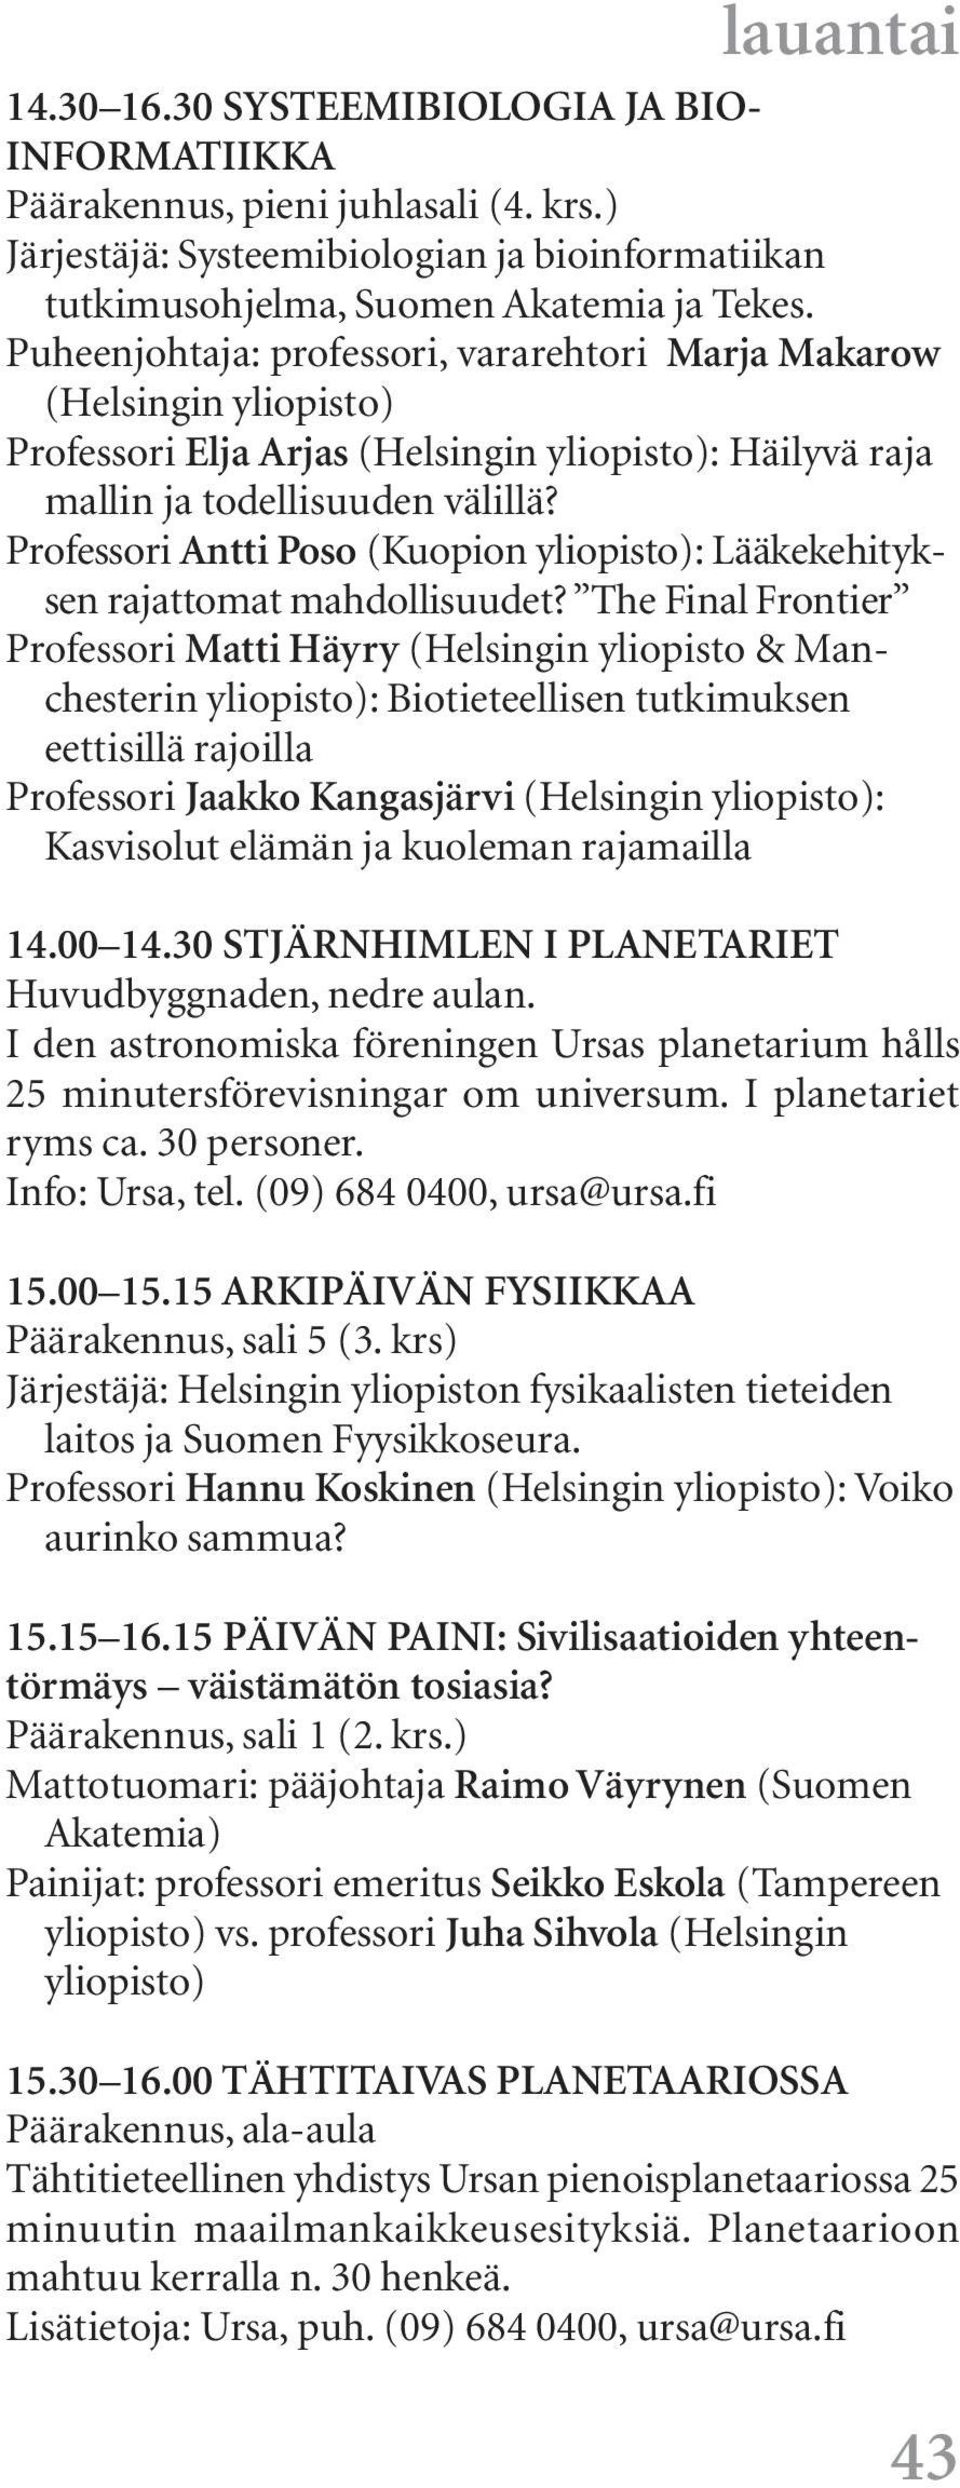 Professori Antti Poso (Kuopion : Lääkekehityksen rajattomat mahdollisuudet?